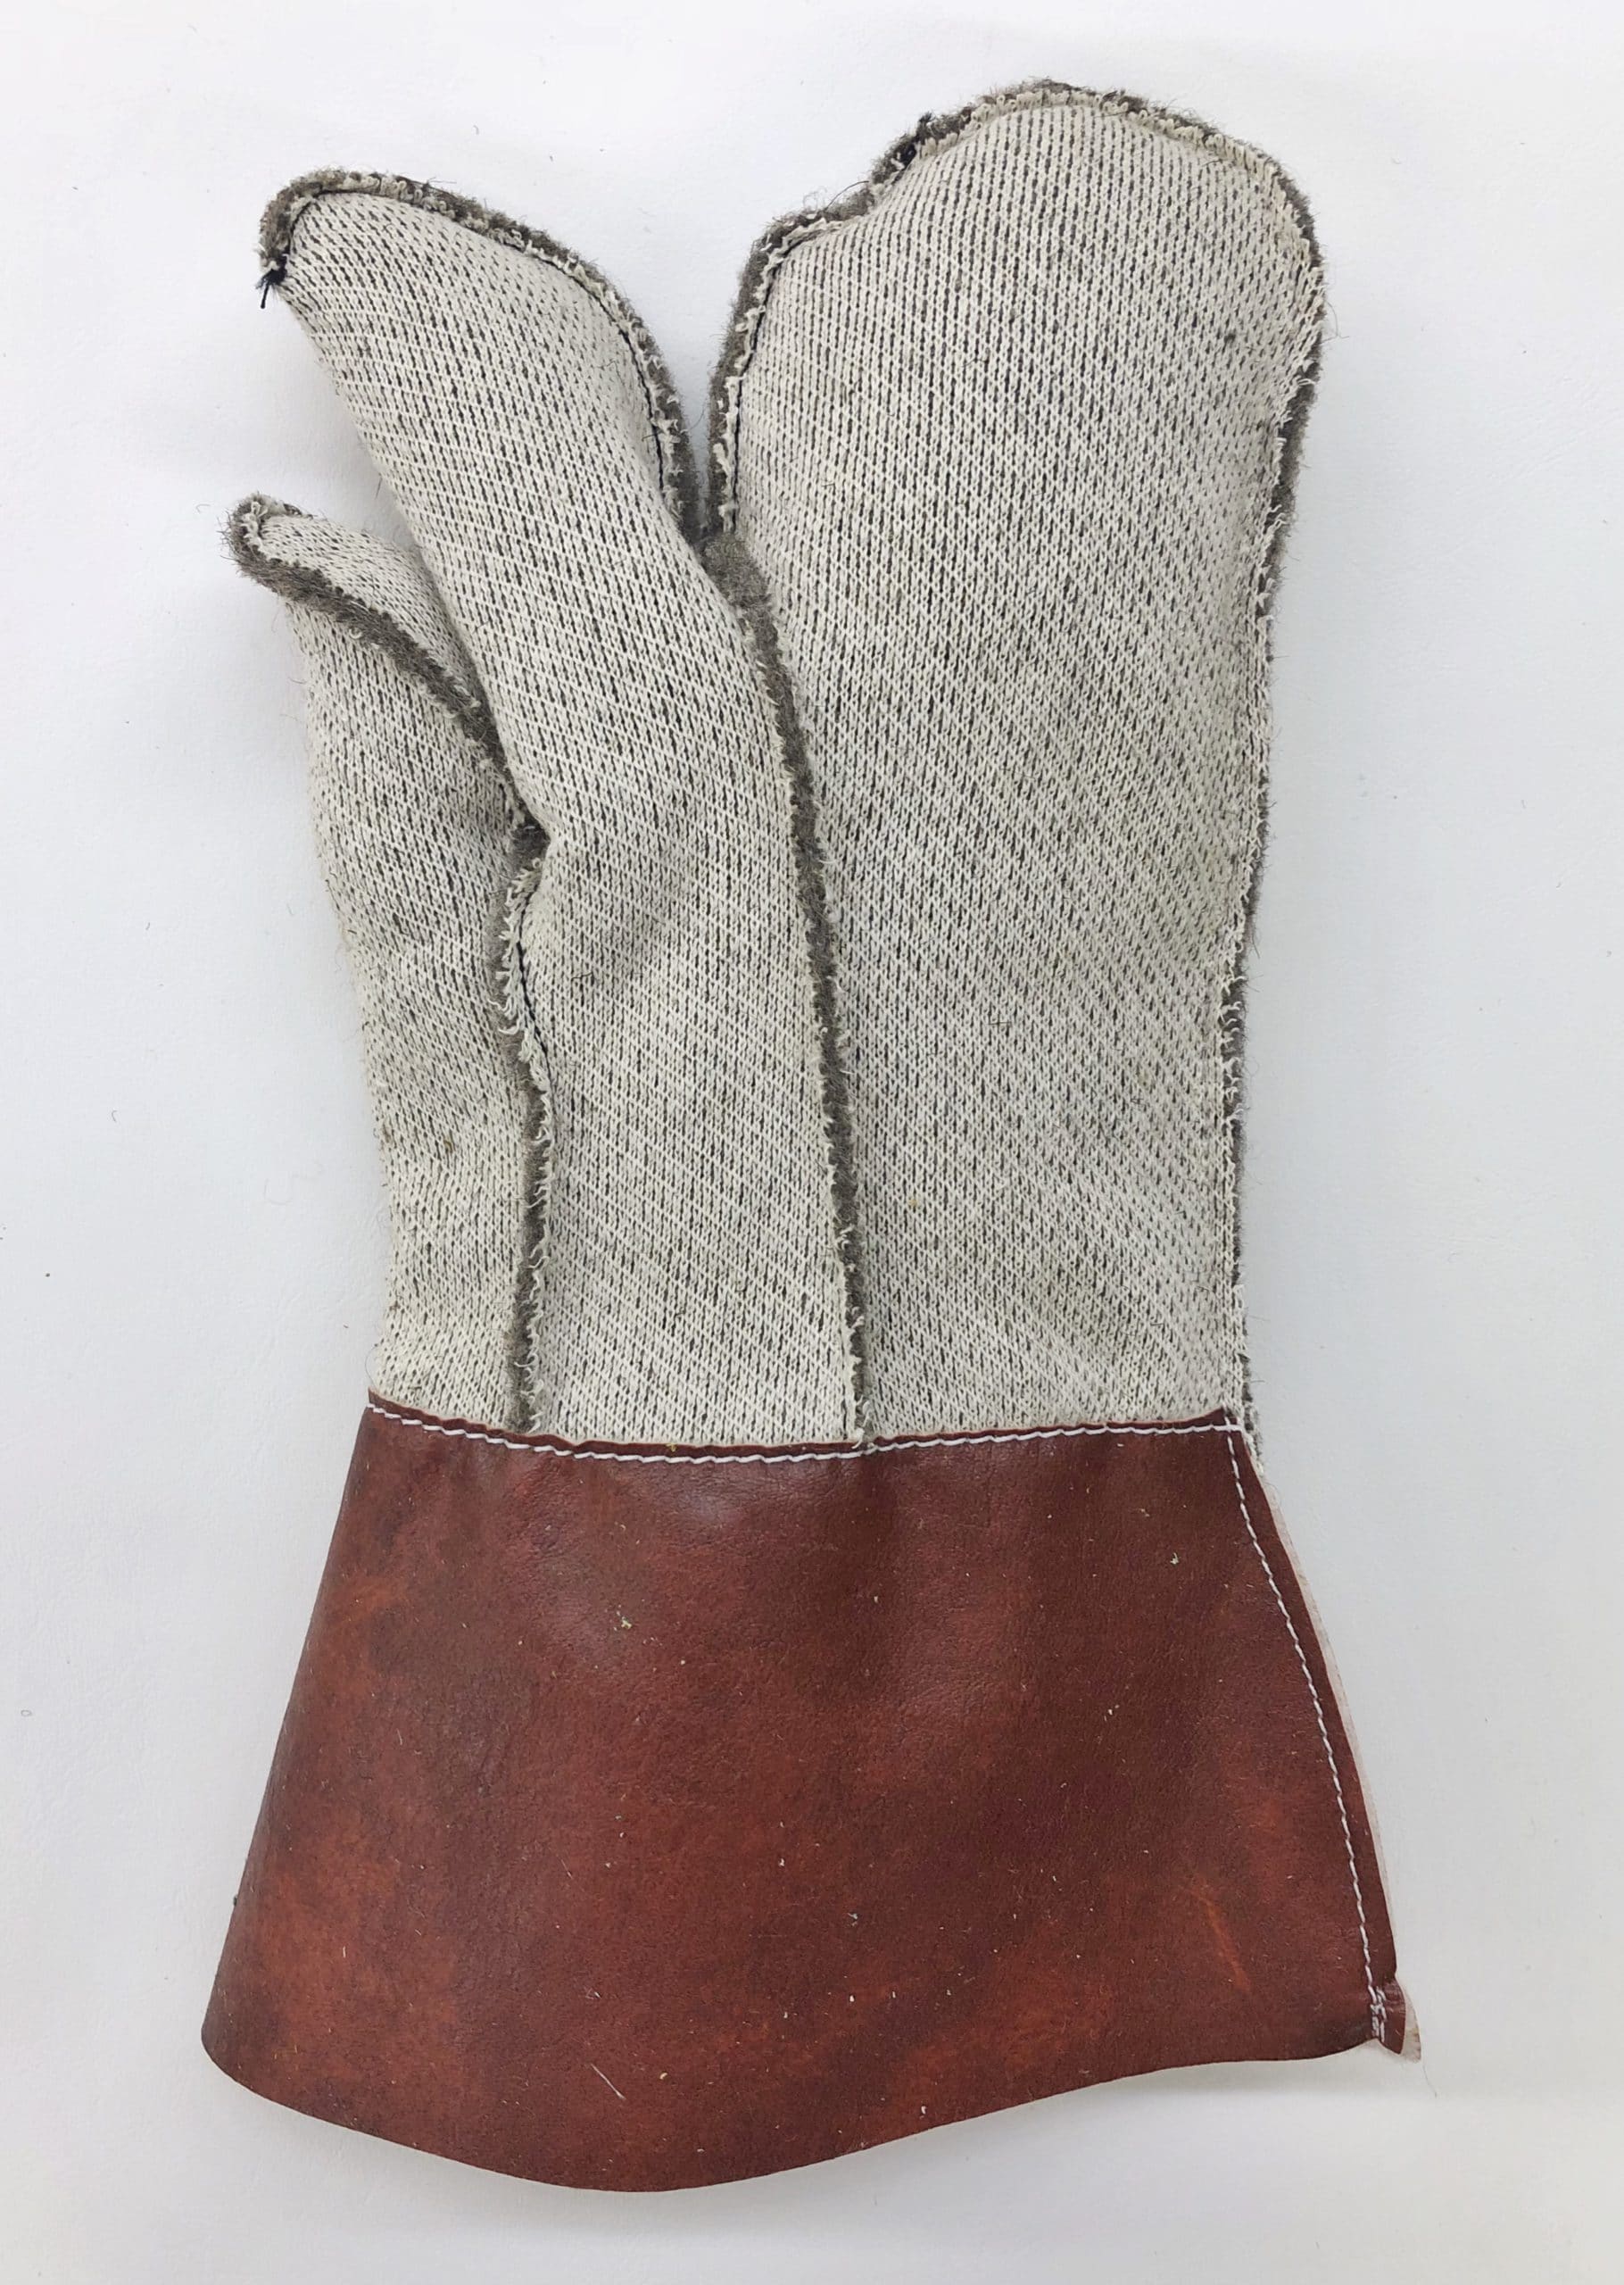 Five Finger String Knit Cotton Glove Liner